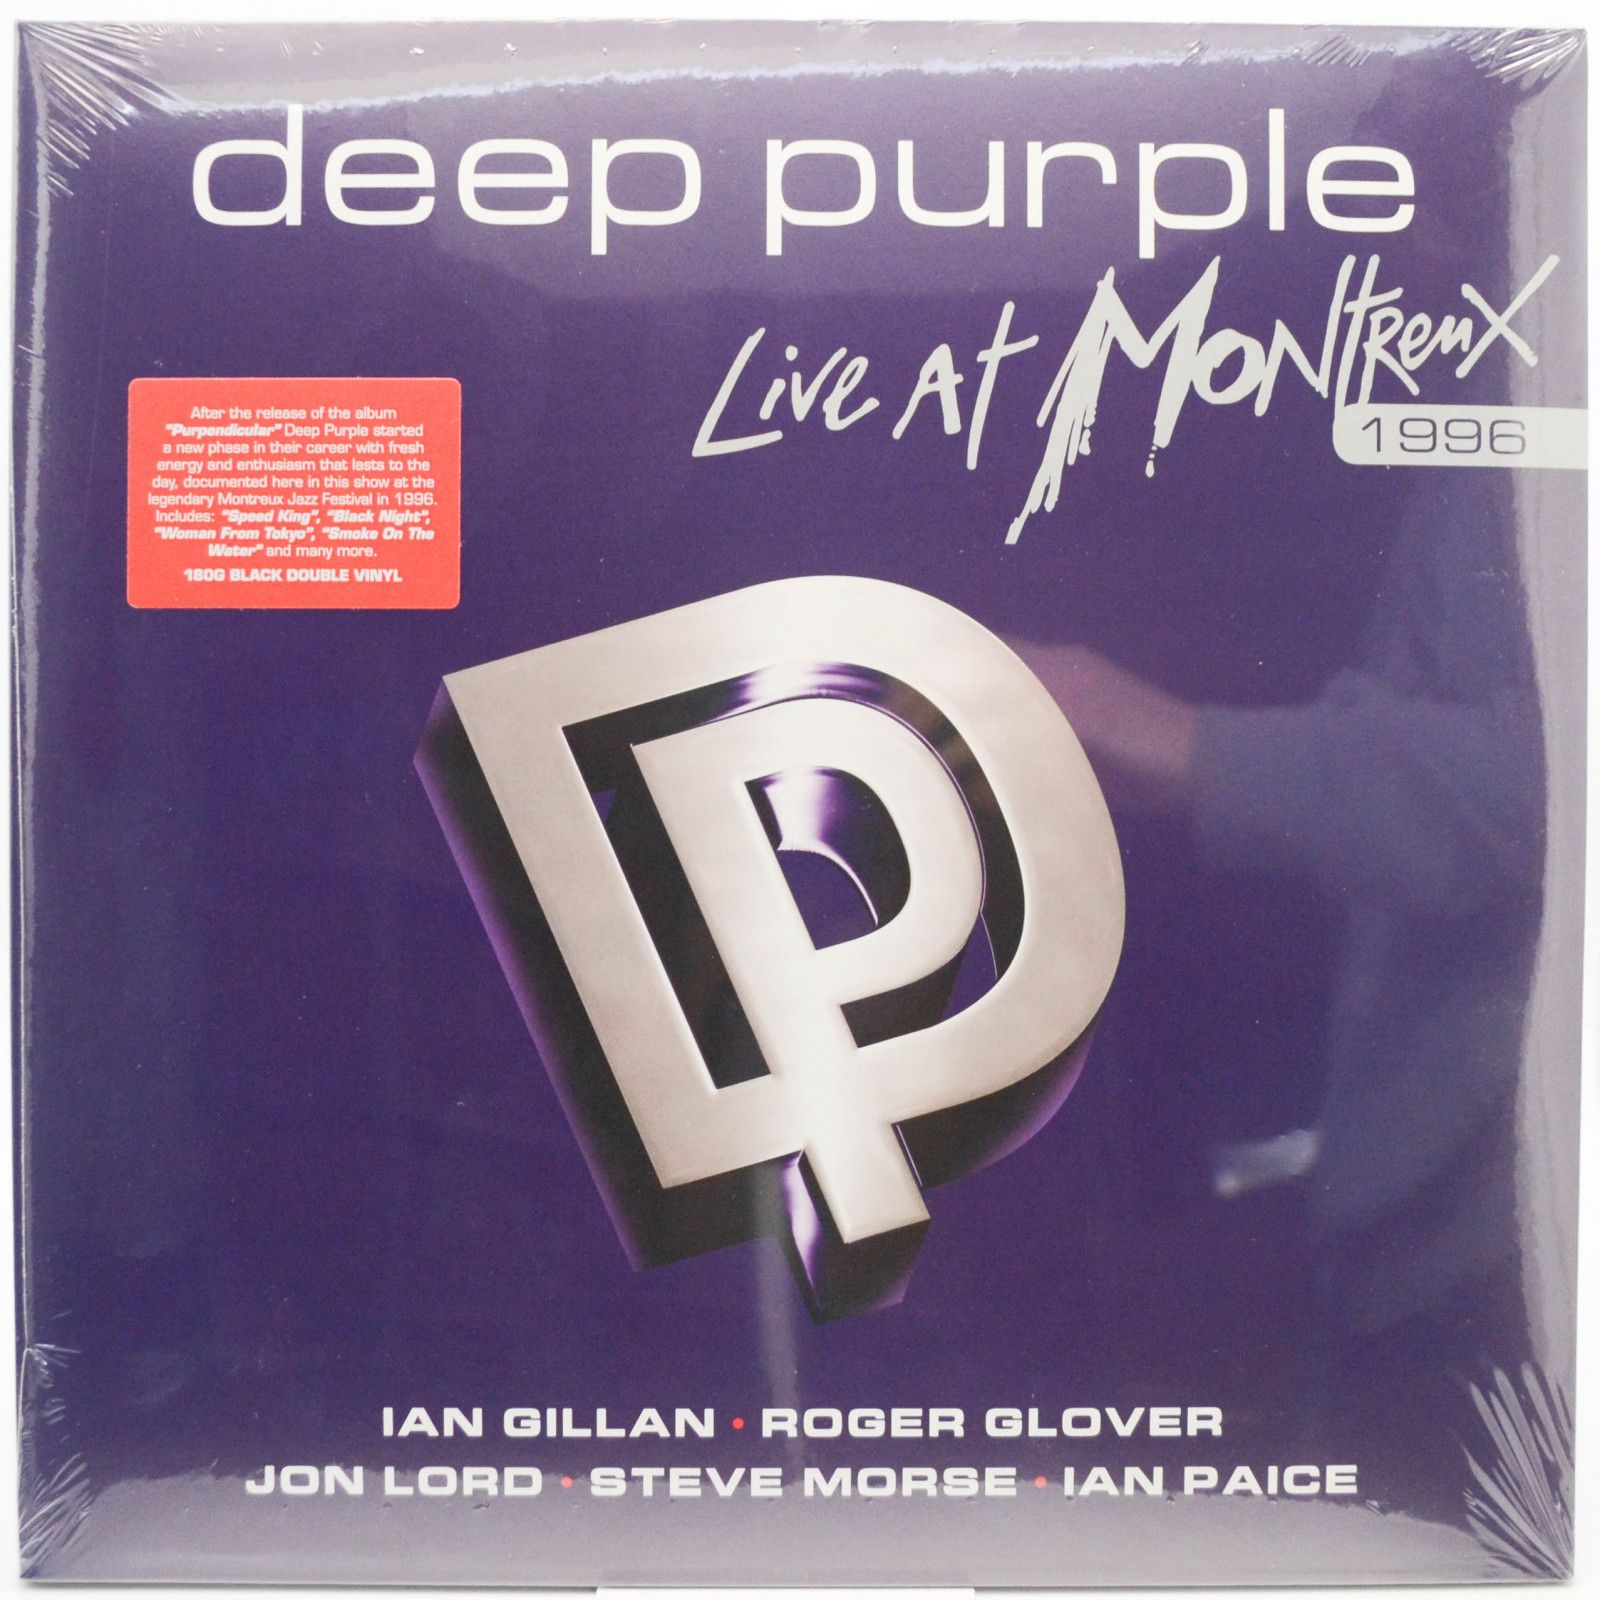 Deep Purple — Live At Montreux 1996 (2LP), 2006